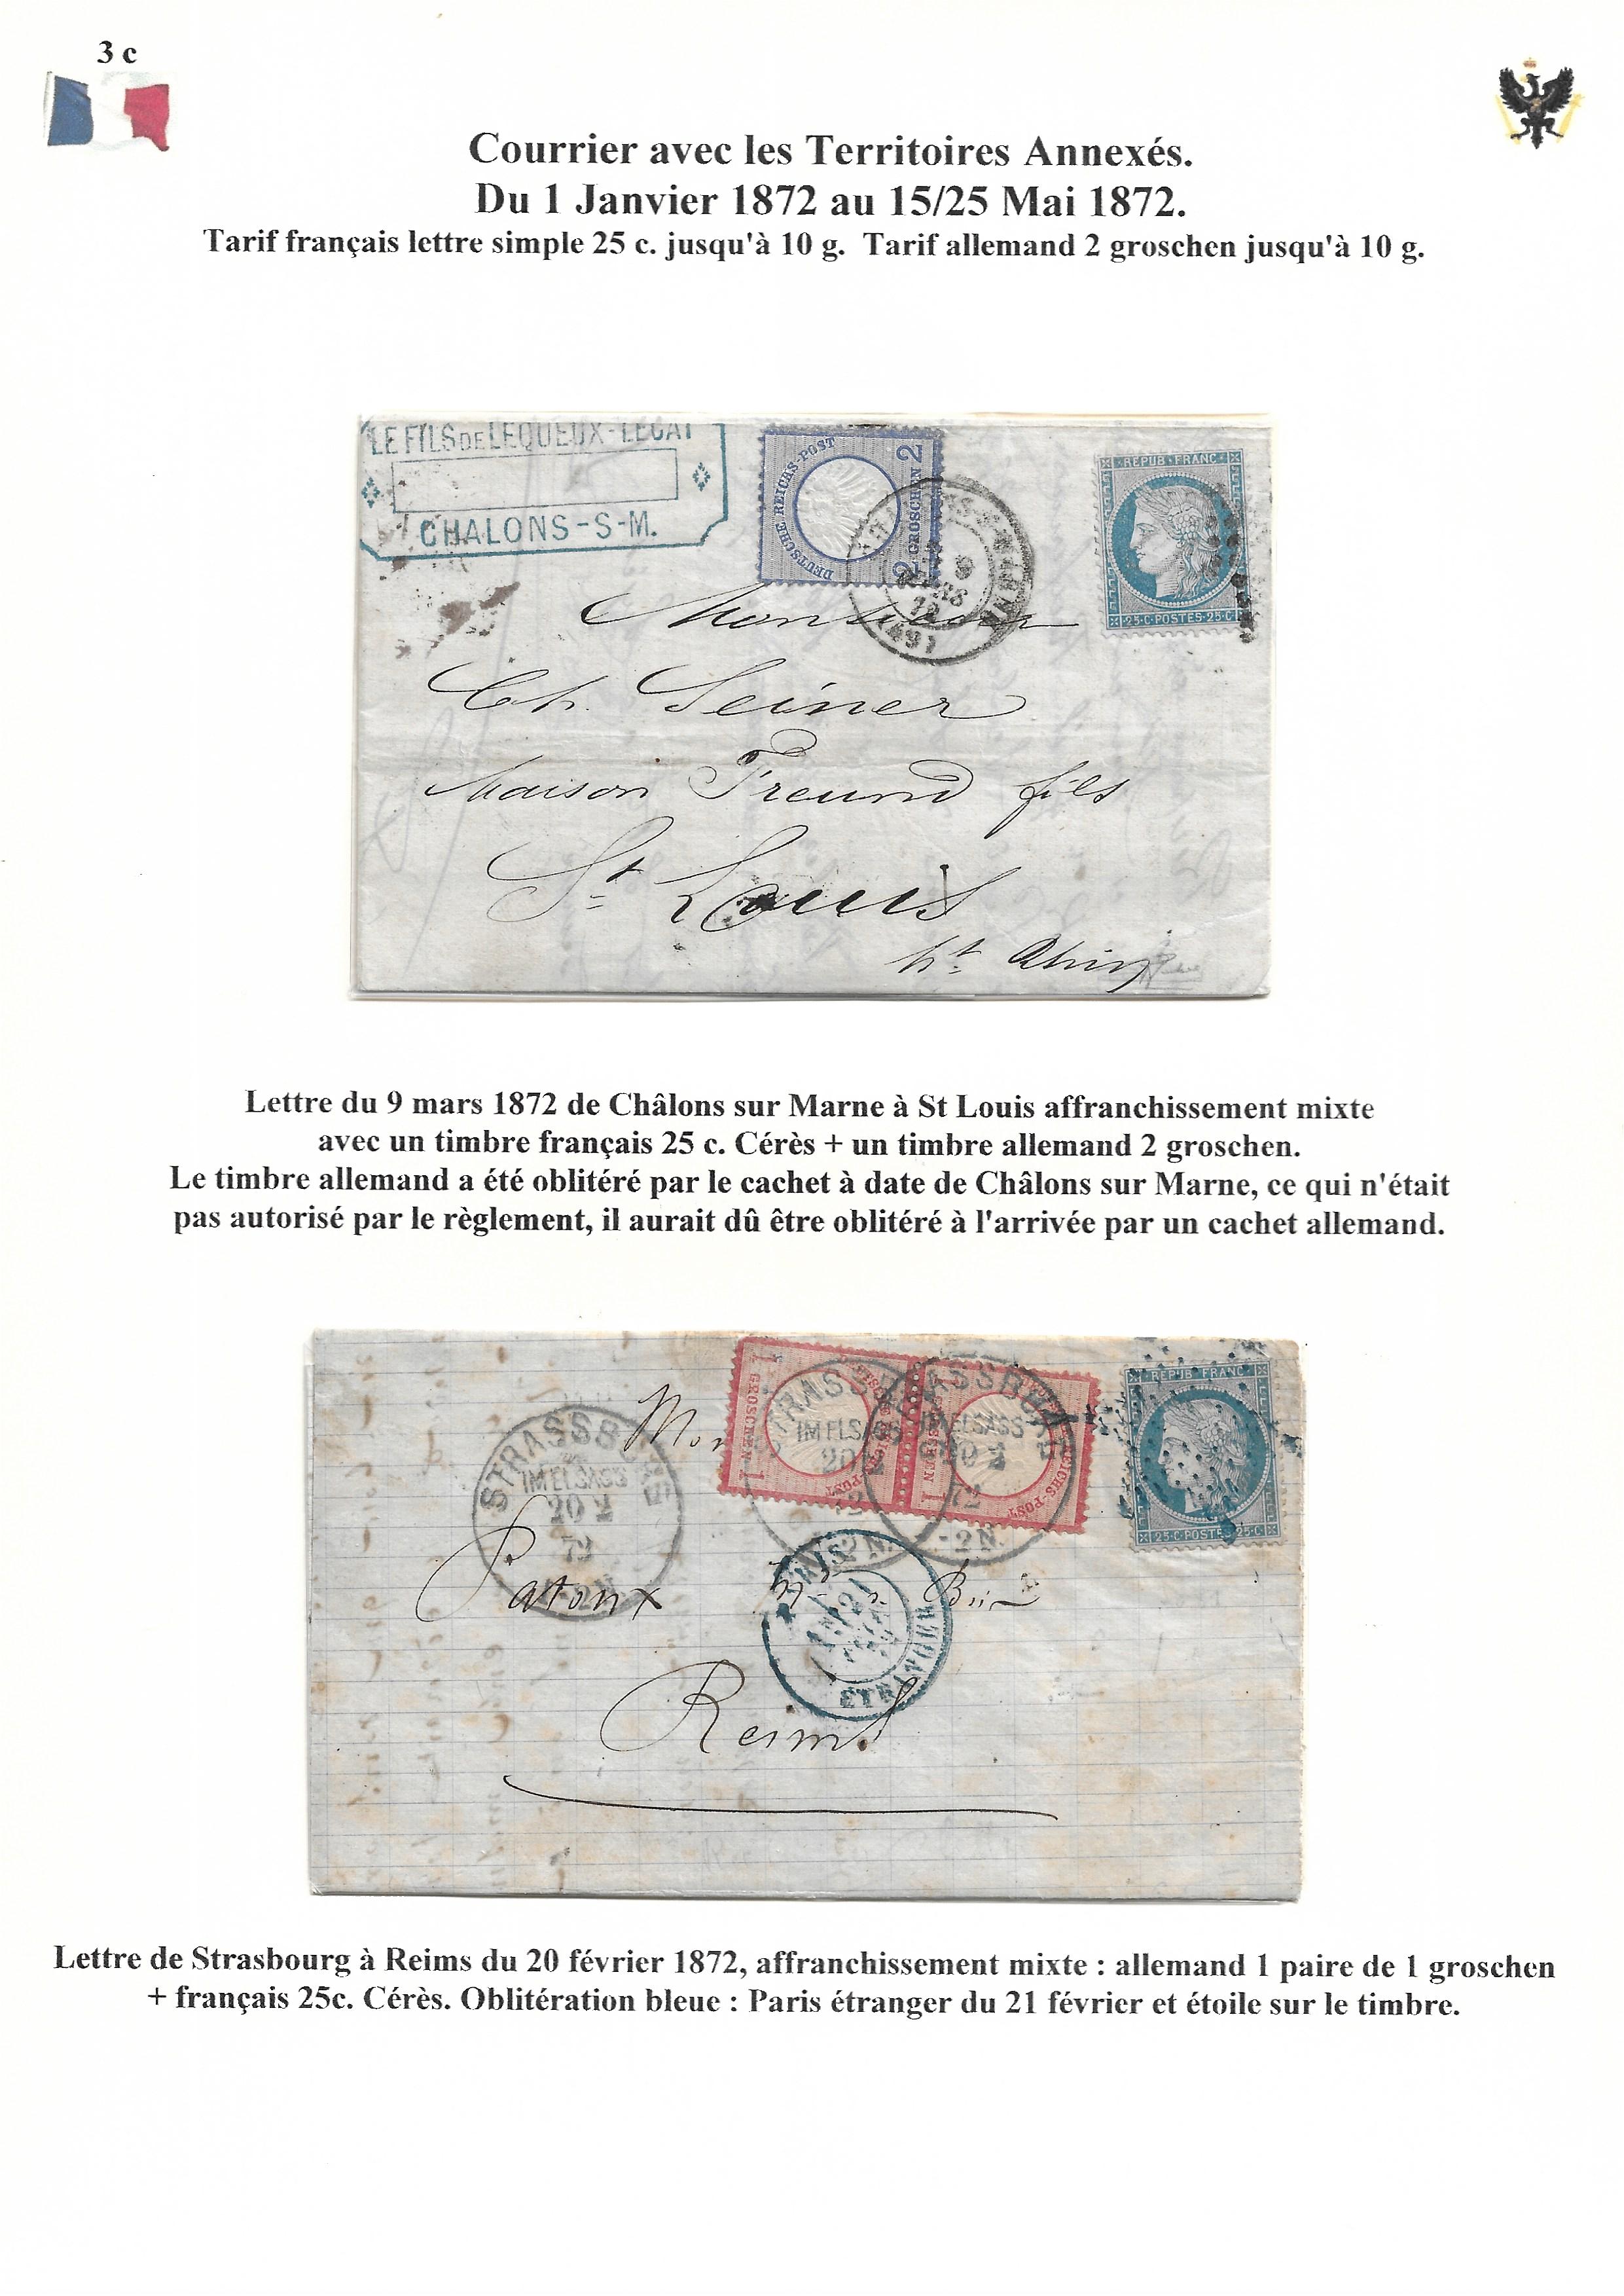 Occupation Prussienne dans la Marne 1870-1872 : Cons��quences sur les relations postales p. 41